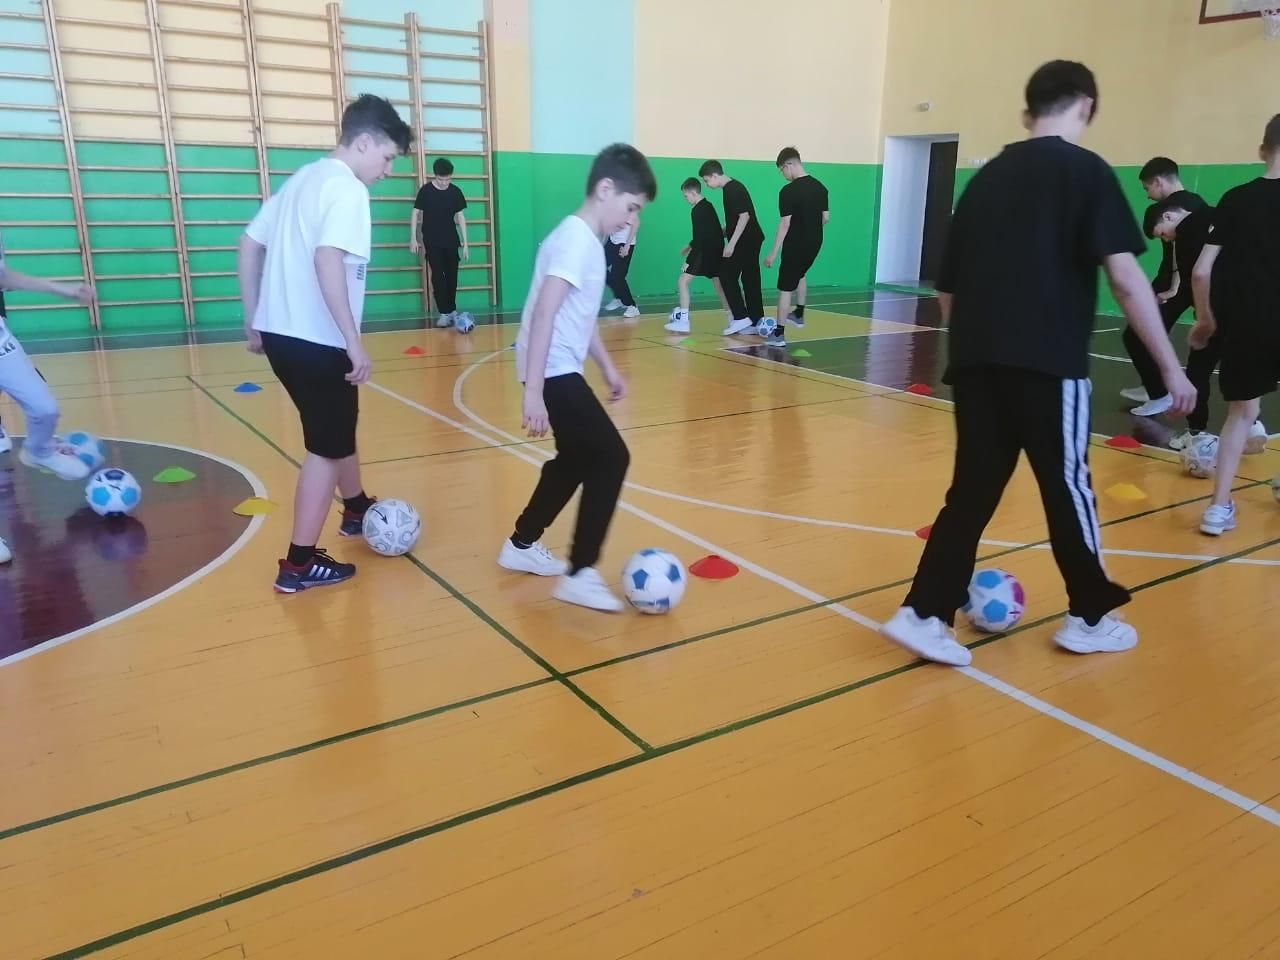 В Нурлатской гимназии прошёл открытый урок футбола